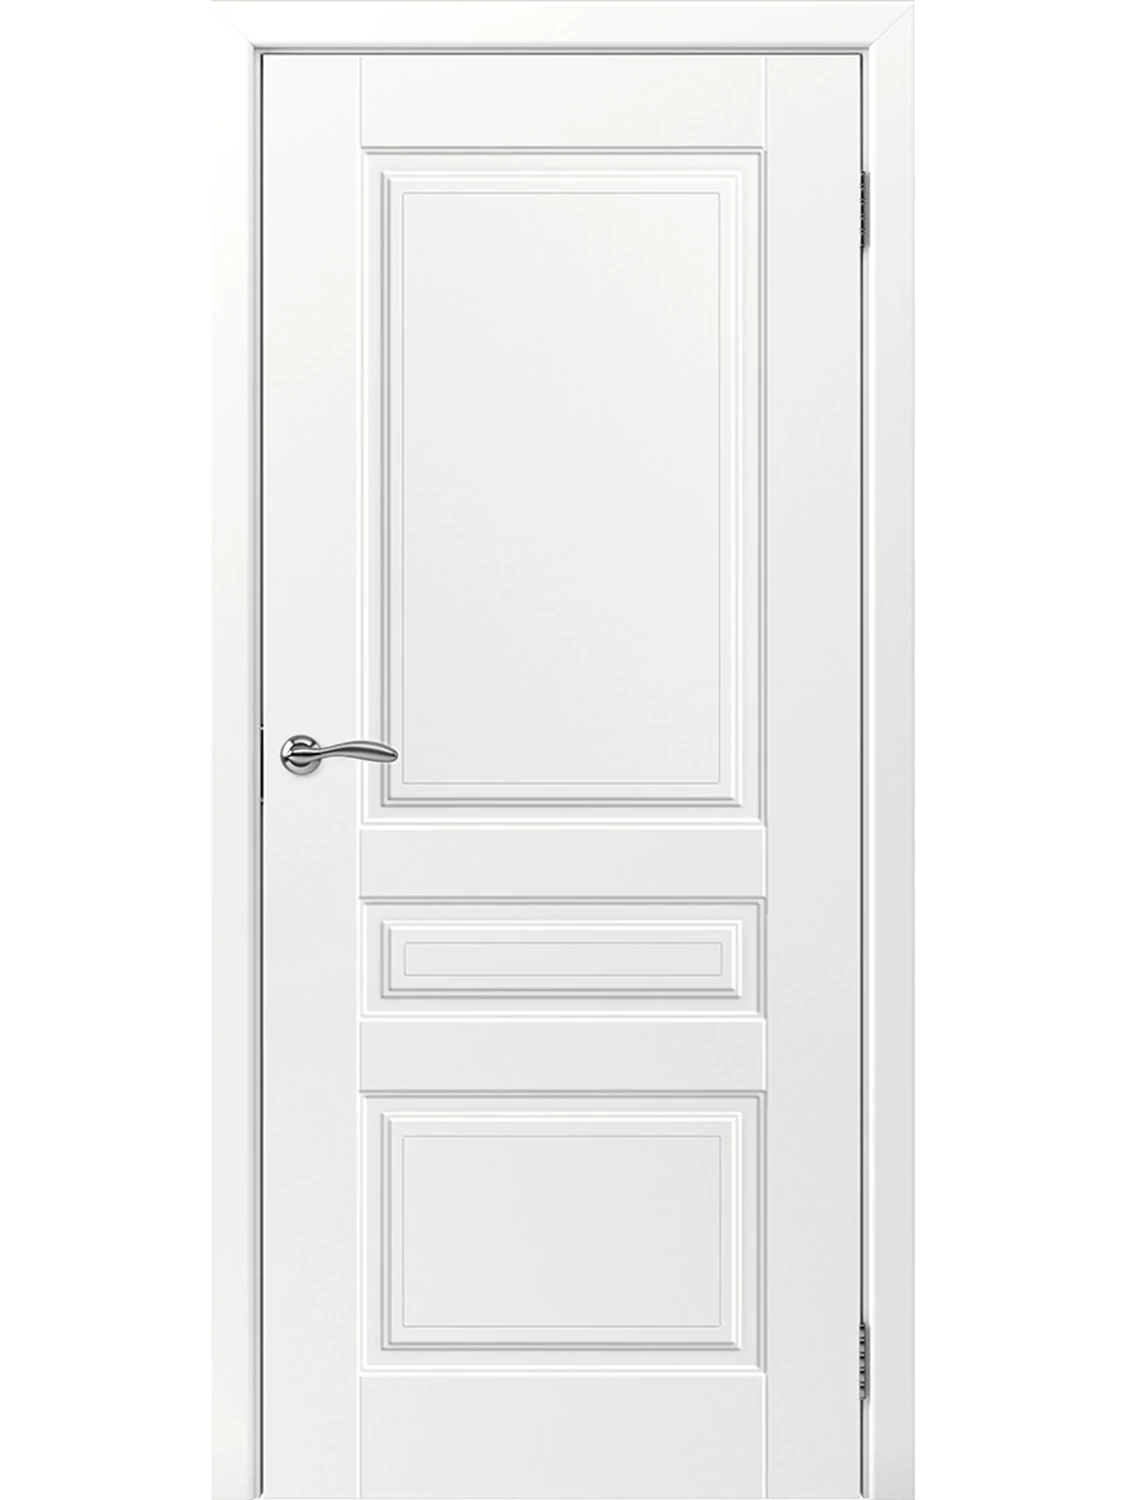 Дверь межкомнатная "АМПИР", эмаль белая